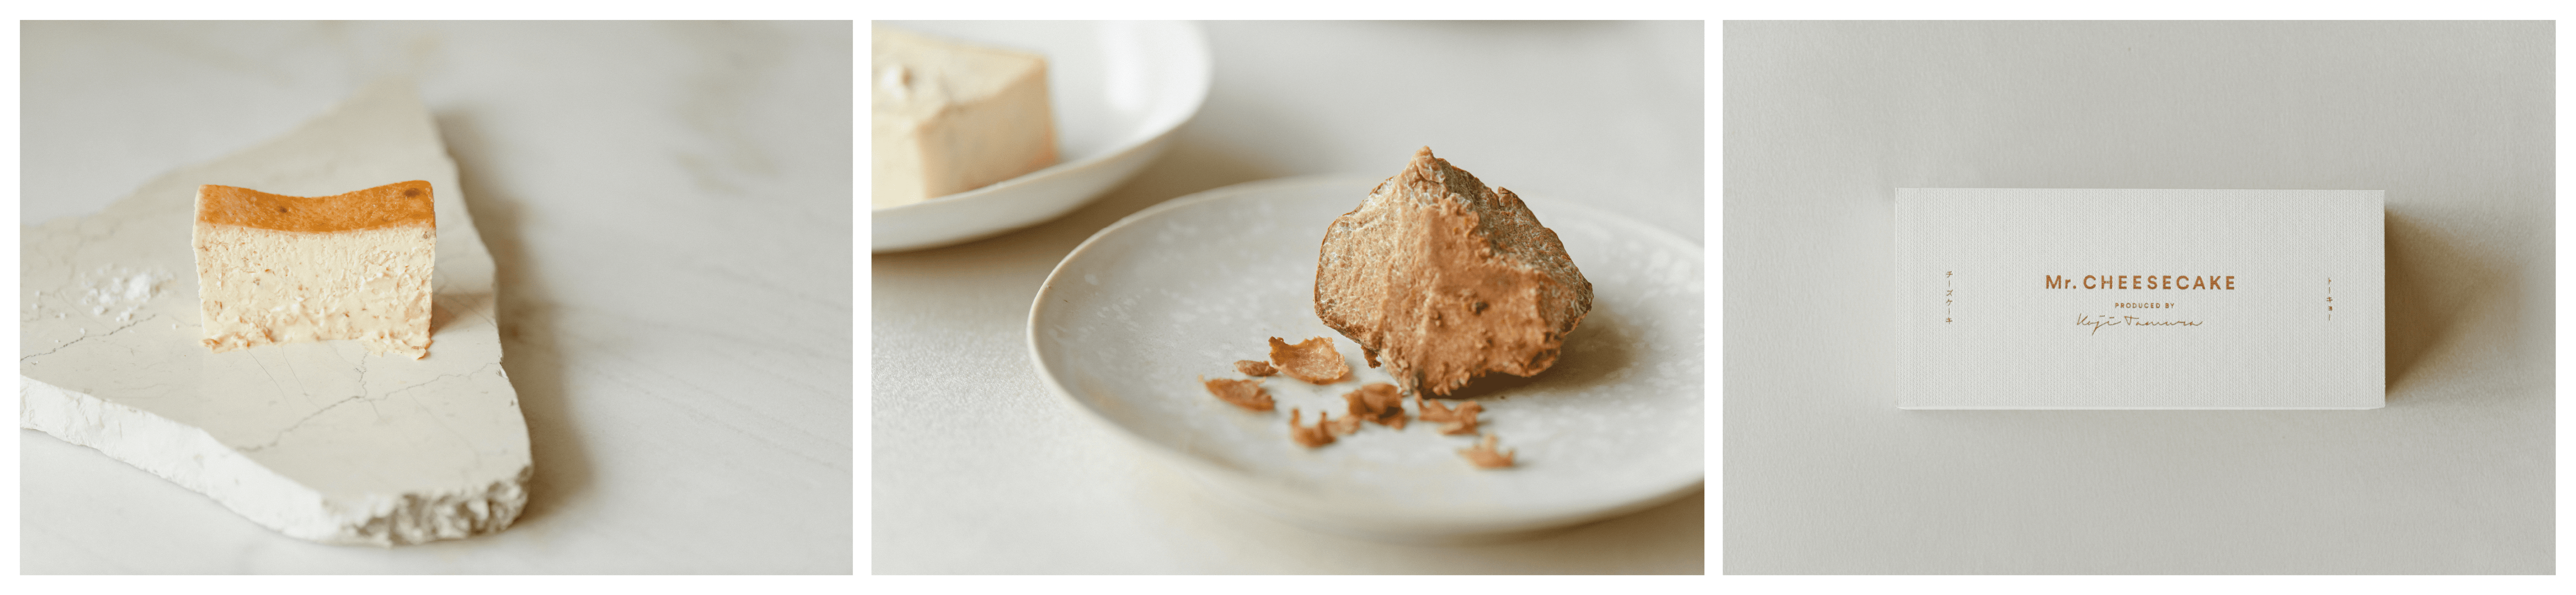 「Mr. CHEESECAKE」から、秋の深まる今が旬の高級食材“白トリュフ”を1本に10gも使用した高級フレーバー「Mr. CHEESECAKE white truffle」が登場のサブ画像2